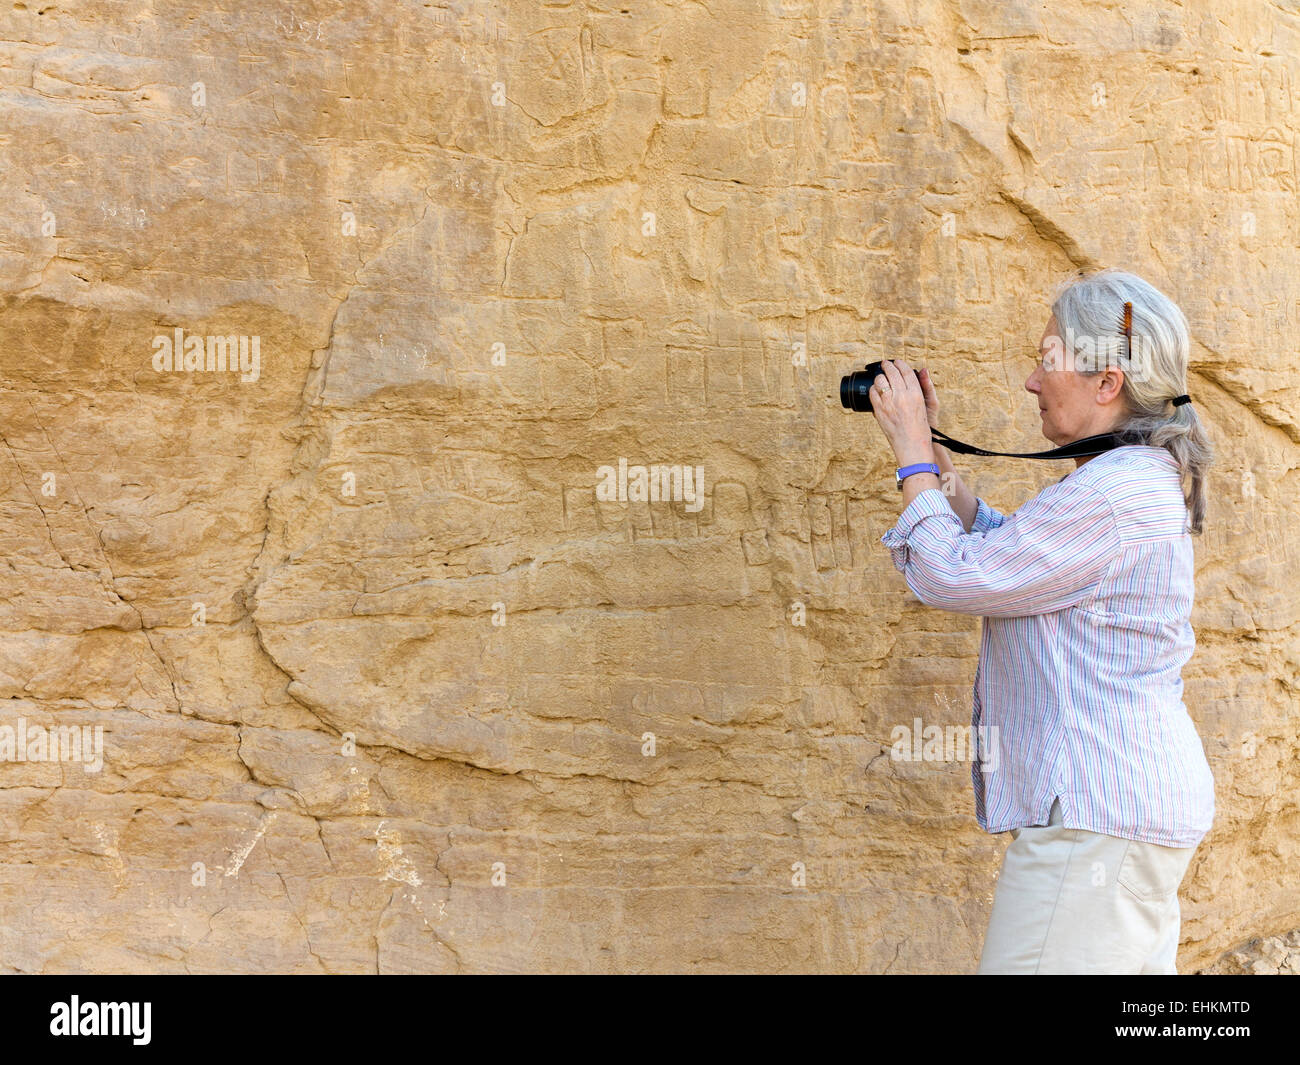 Photographier des femmes à l'art Rock Rock vautour à l'entrée de l'Oued Hellal, el Kab, ancienne Nekheb dans l'est désert, Egypte Banque D'Images